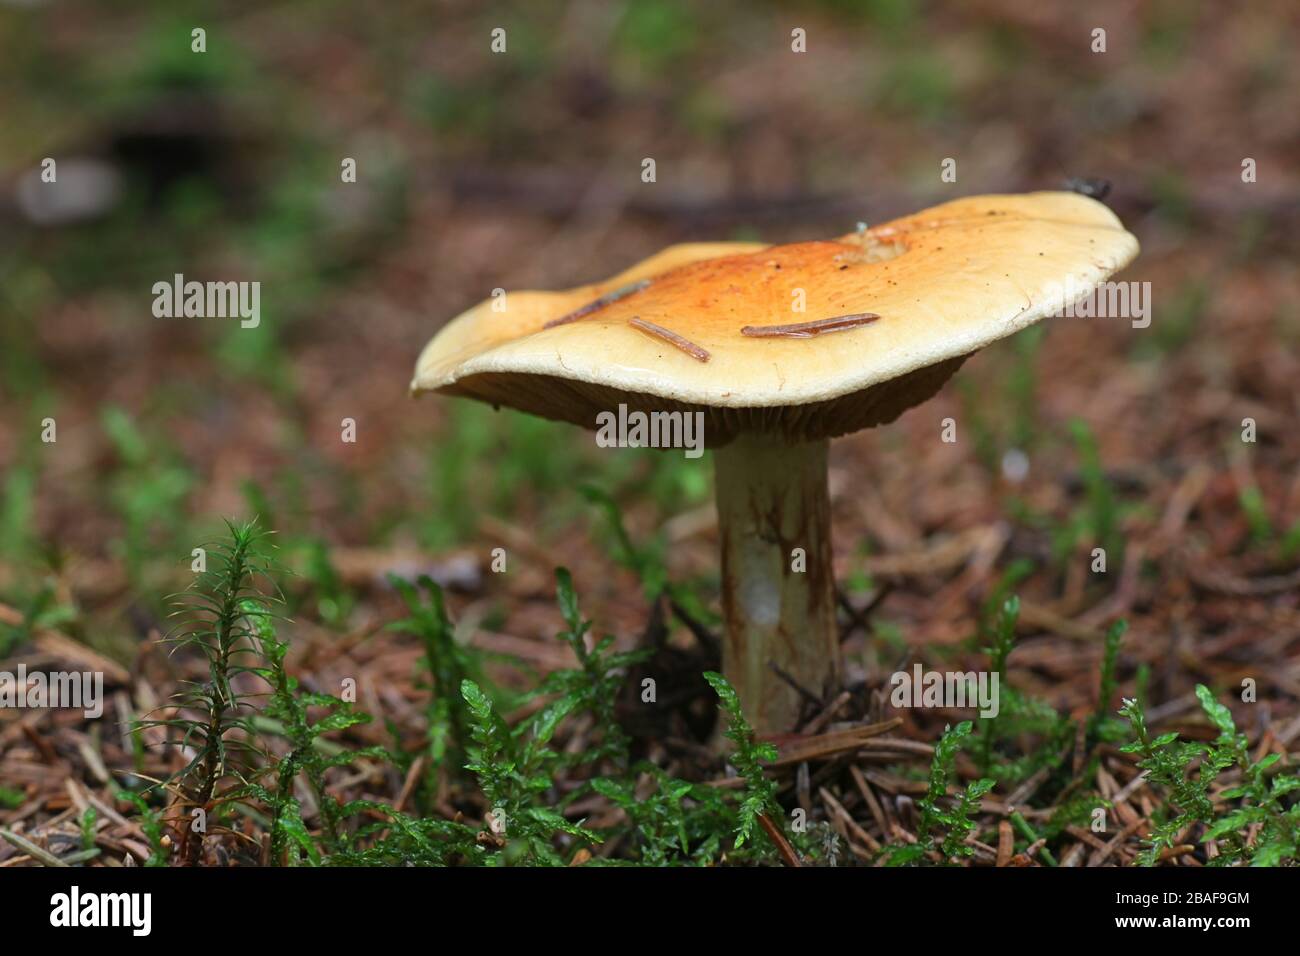 Cortinarius aureofulvus, a fungus of the subgenus Phlegmacium, webcap mushroom from Finland Stock Photo